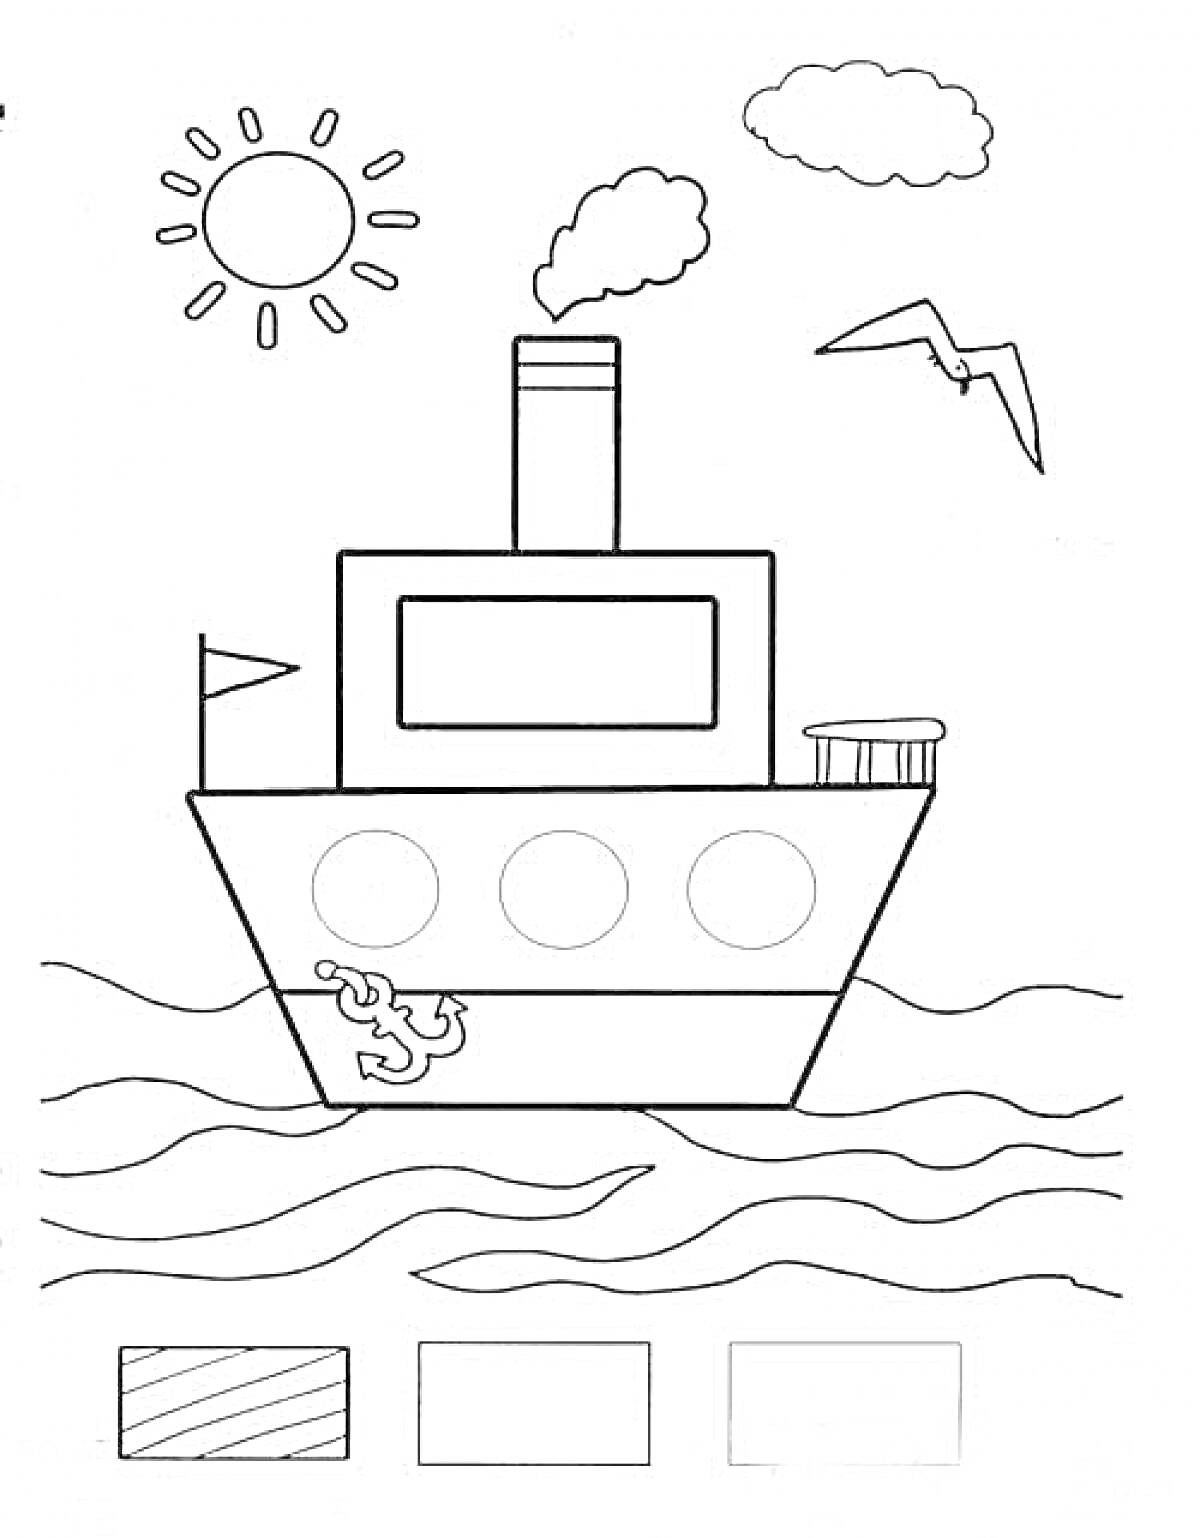 Корабль с геометрическими фигурами, солнцем, облаком и чайкой над волнами